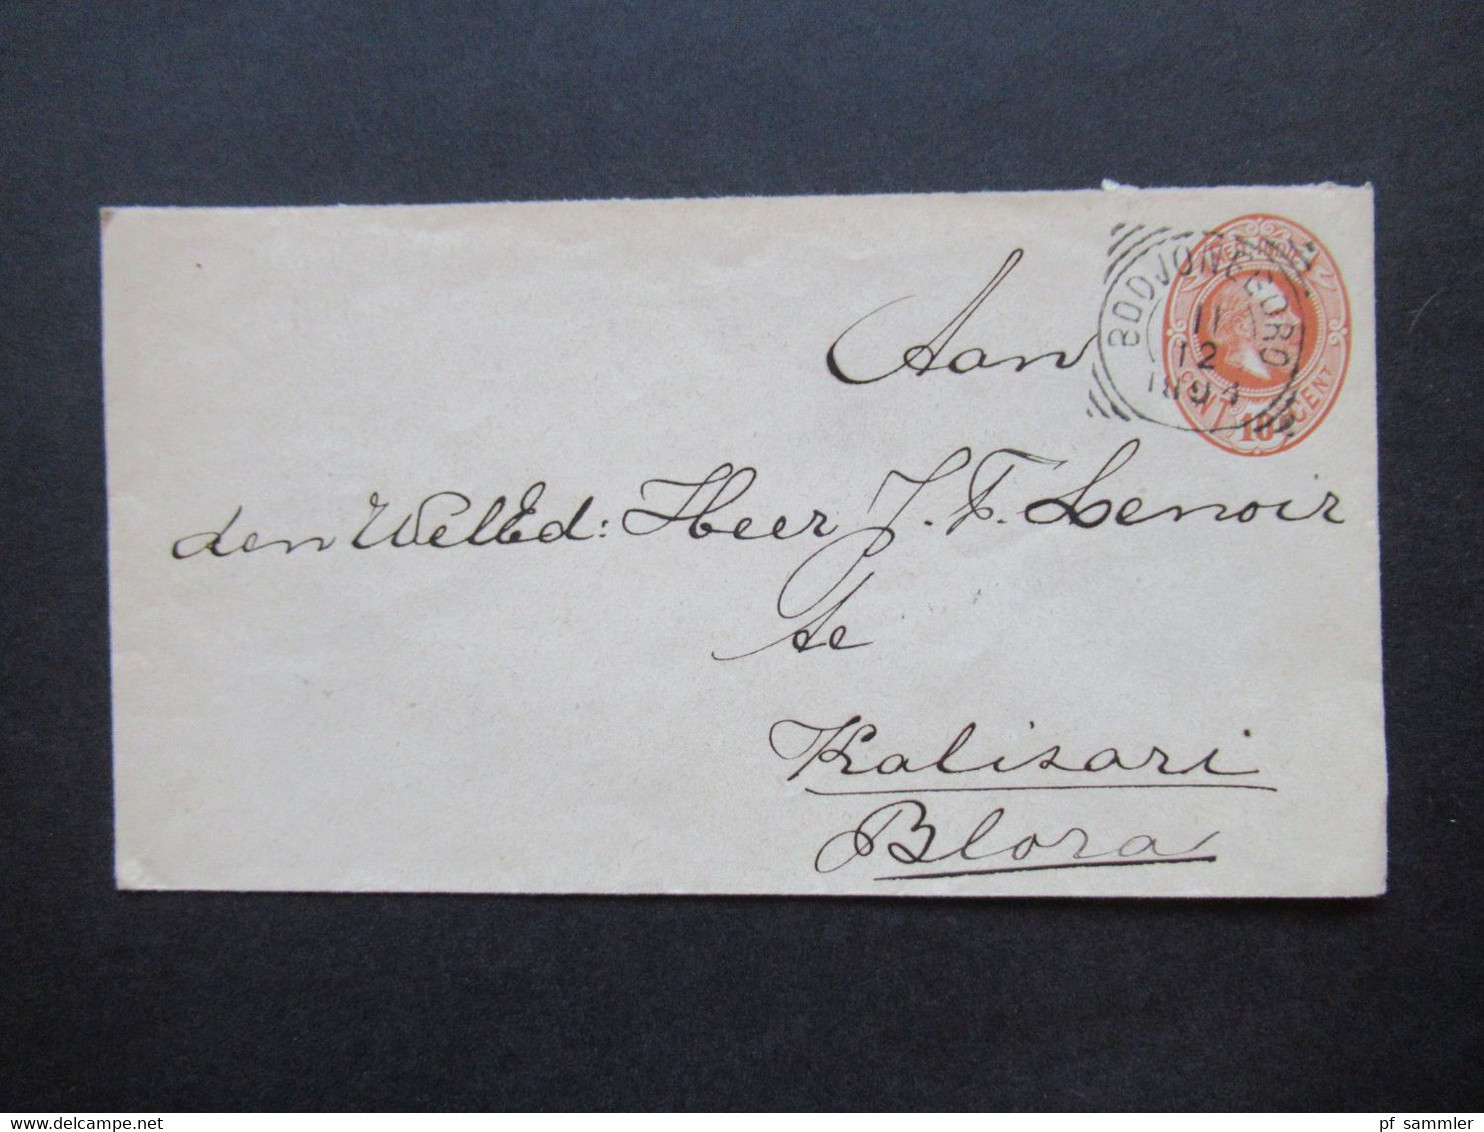 Niederländisch Indien 1894 GA Umschlag Mit 4 Stempeln U.a. Bodjonegoro Nach Blaza Gesendet Auslandsbrief - Netherlands Indies